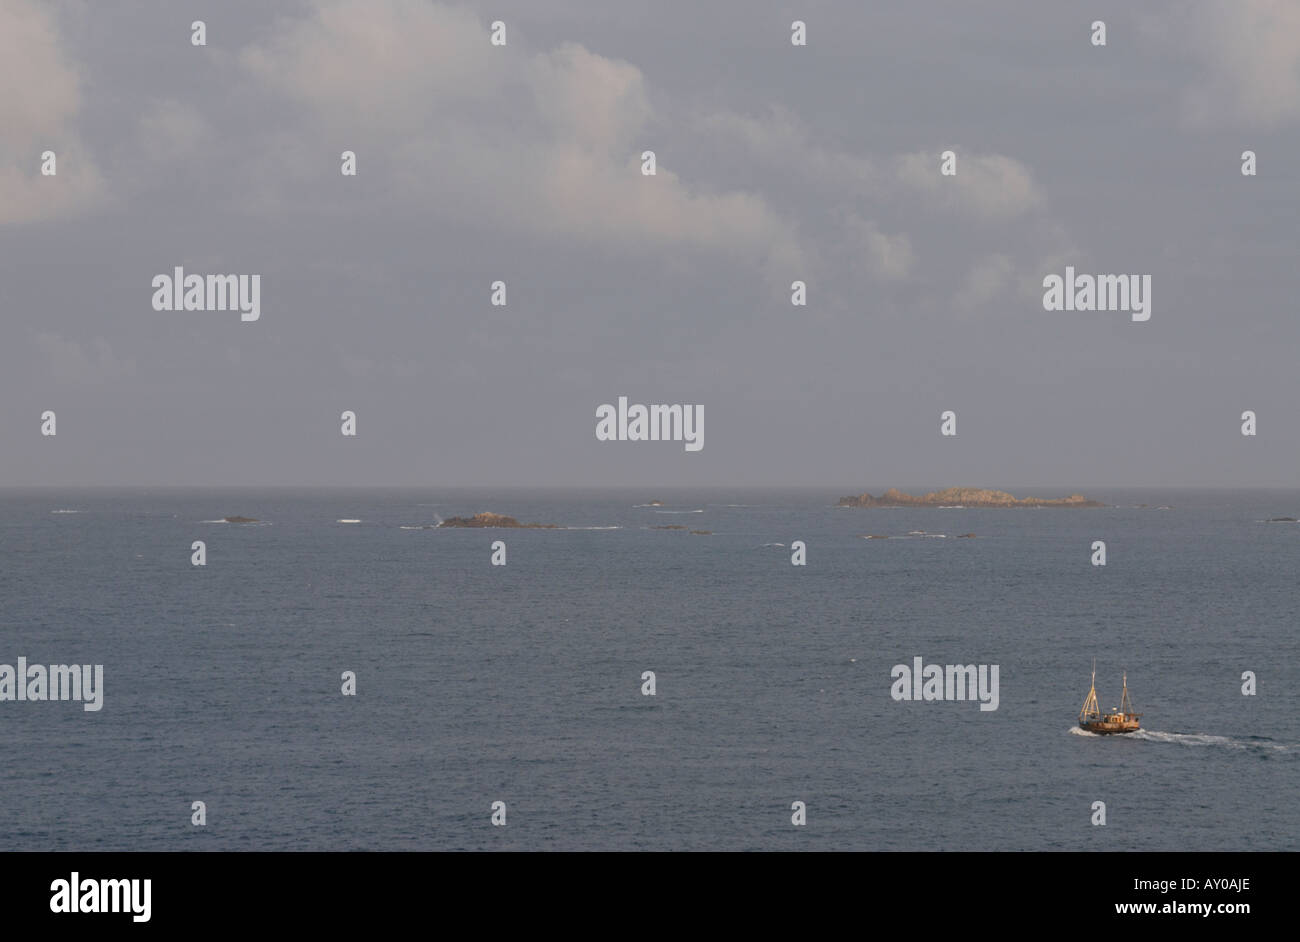 Un bateau de pêche se met en route de St Mary s vers un ciel orageux gris Banque D'Images